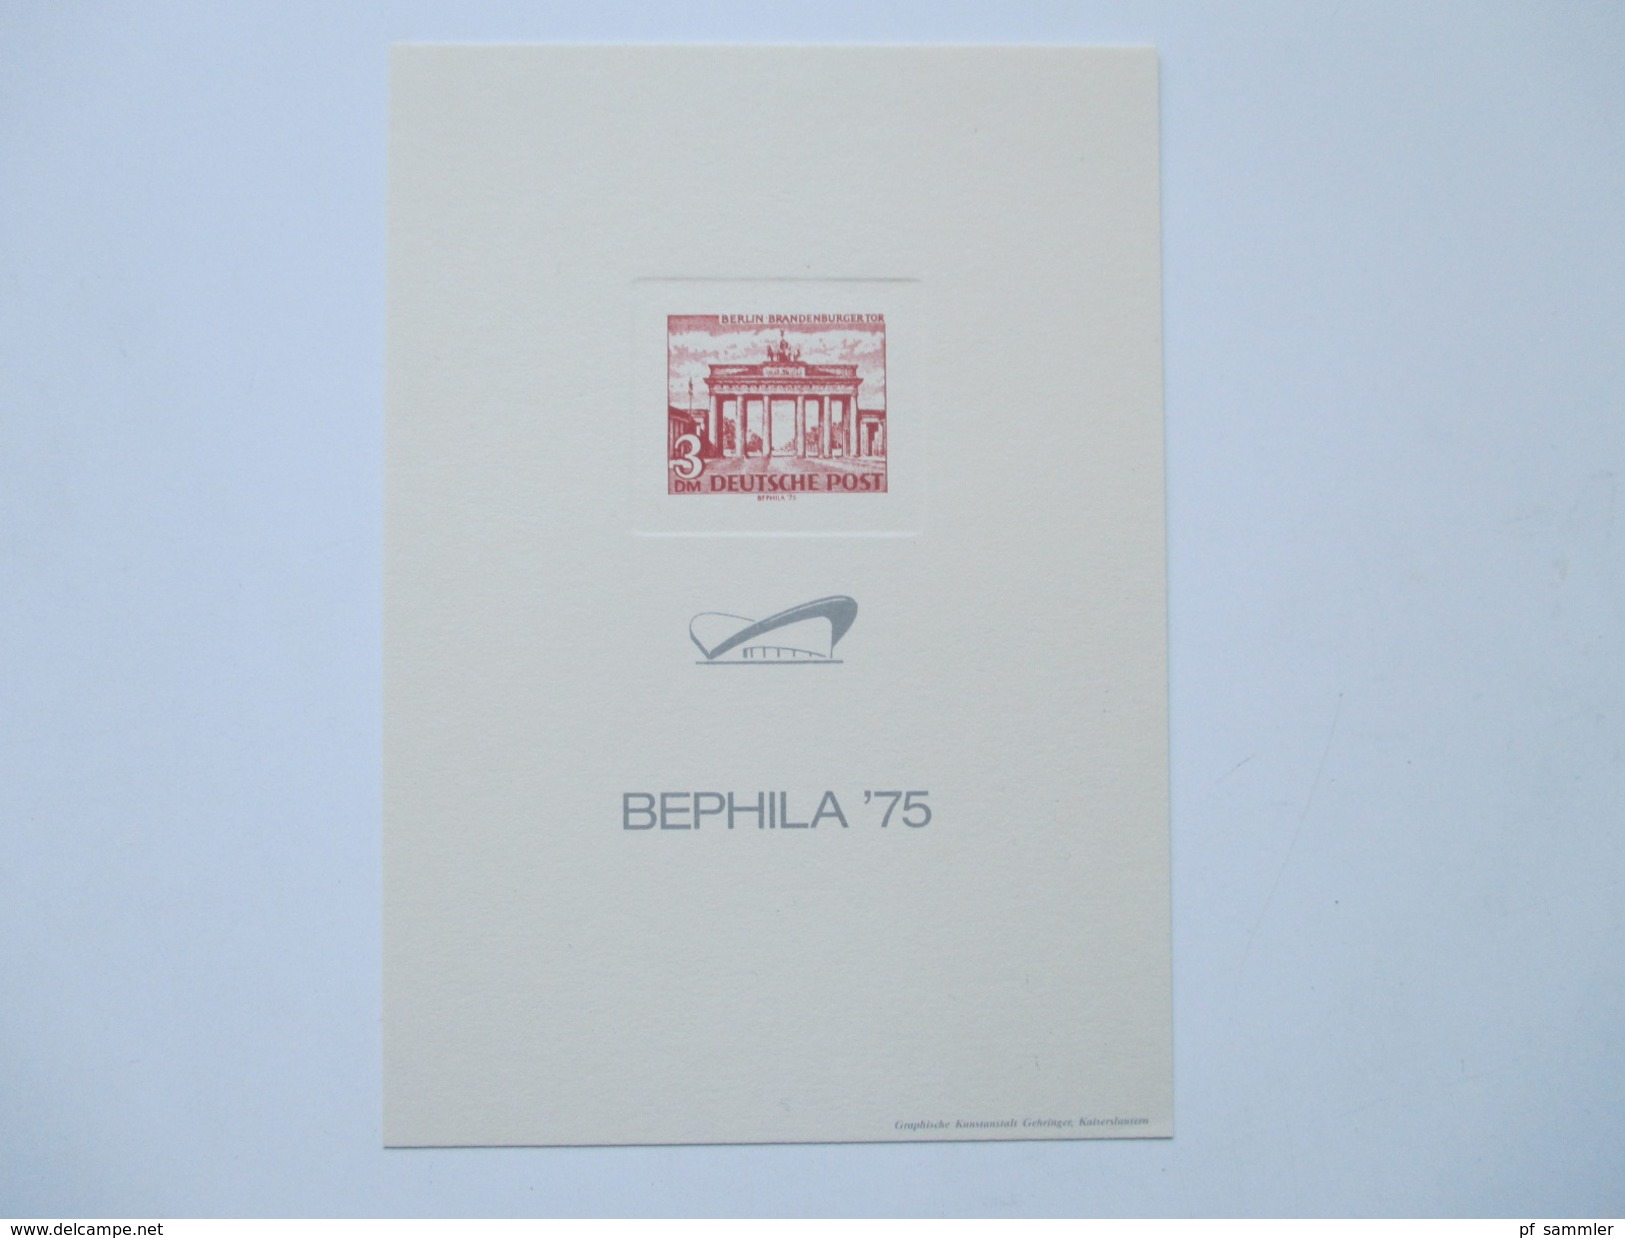 Berlin Sonderdrucke / Entwürfe Luftpostmarkenserie / Berlin 1972 / Bephila 1975 insgesamt 30 Stück! Hoher Wert!!